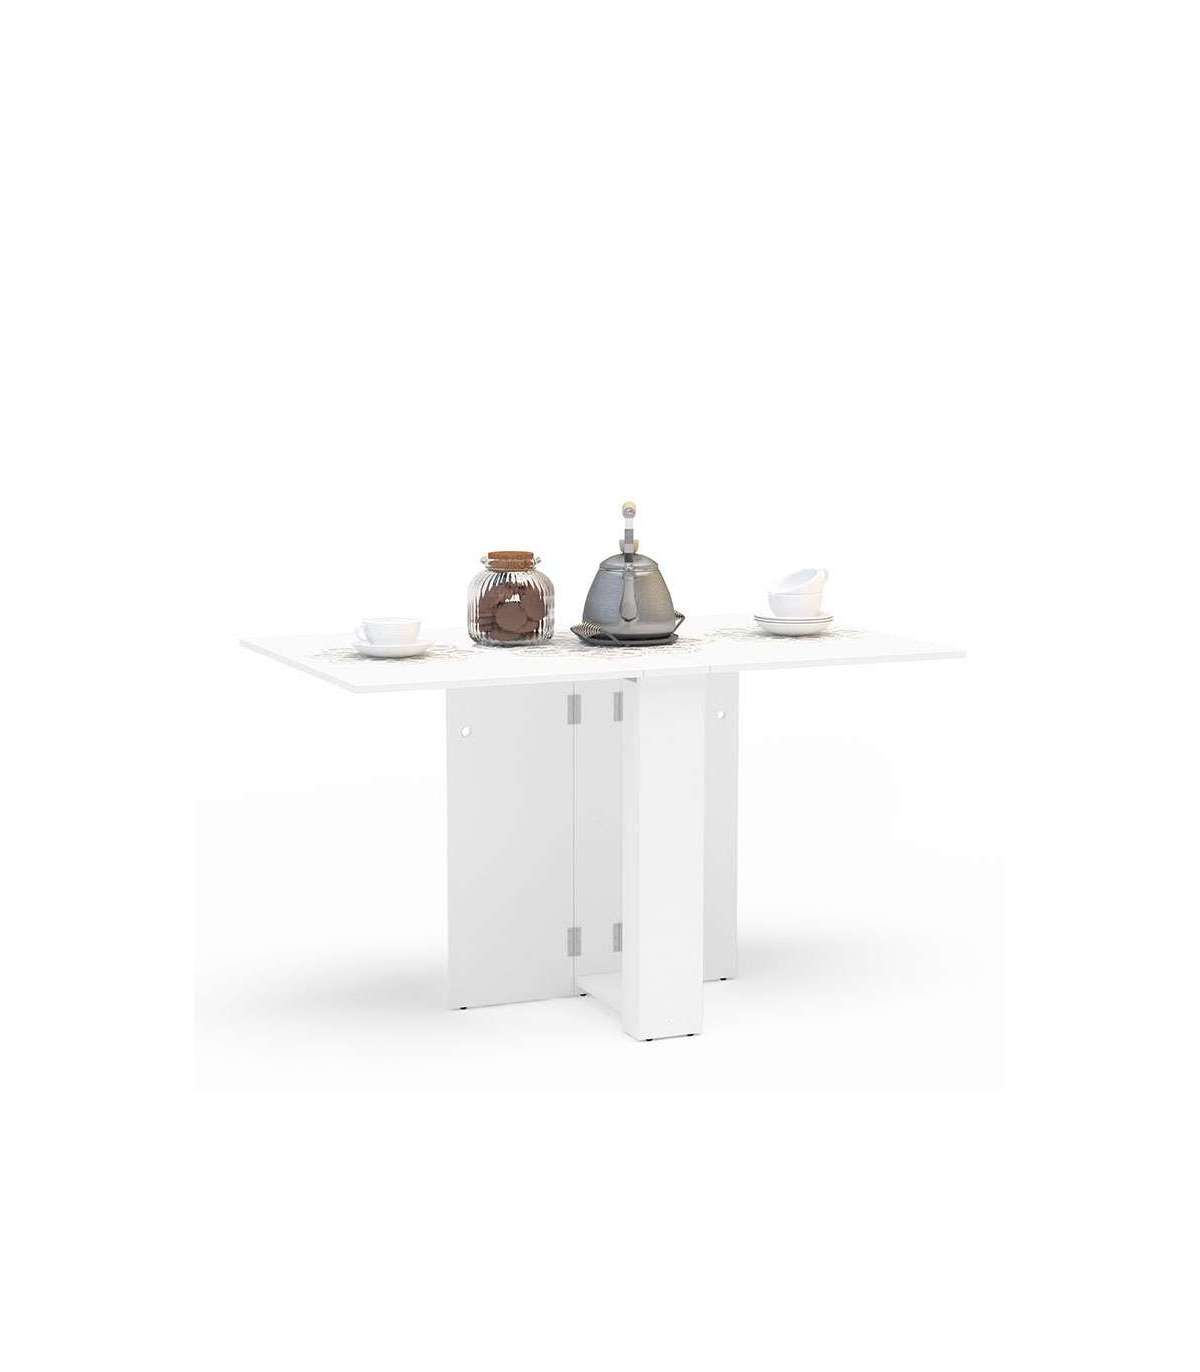 Mesa de comedor plegable con estante de almacenamiento y 2 cajones, mesa de  cocina móvil extensible versátil que ahorra espacio plegable en 3 formas